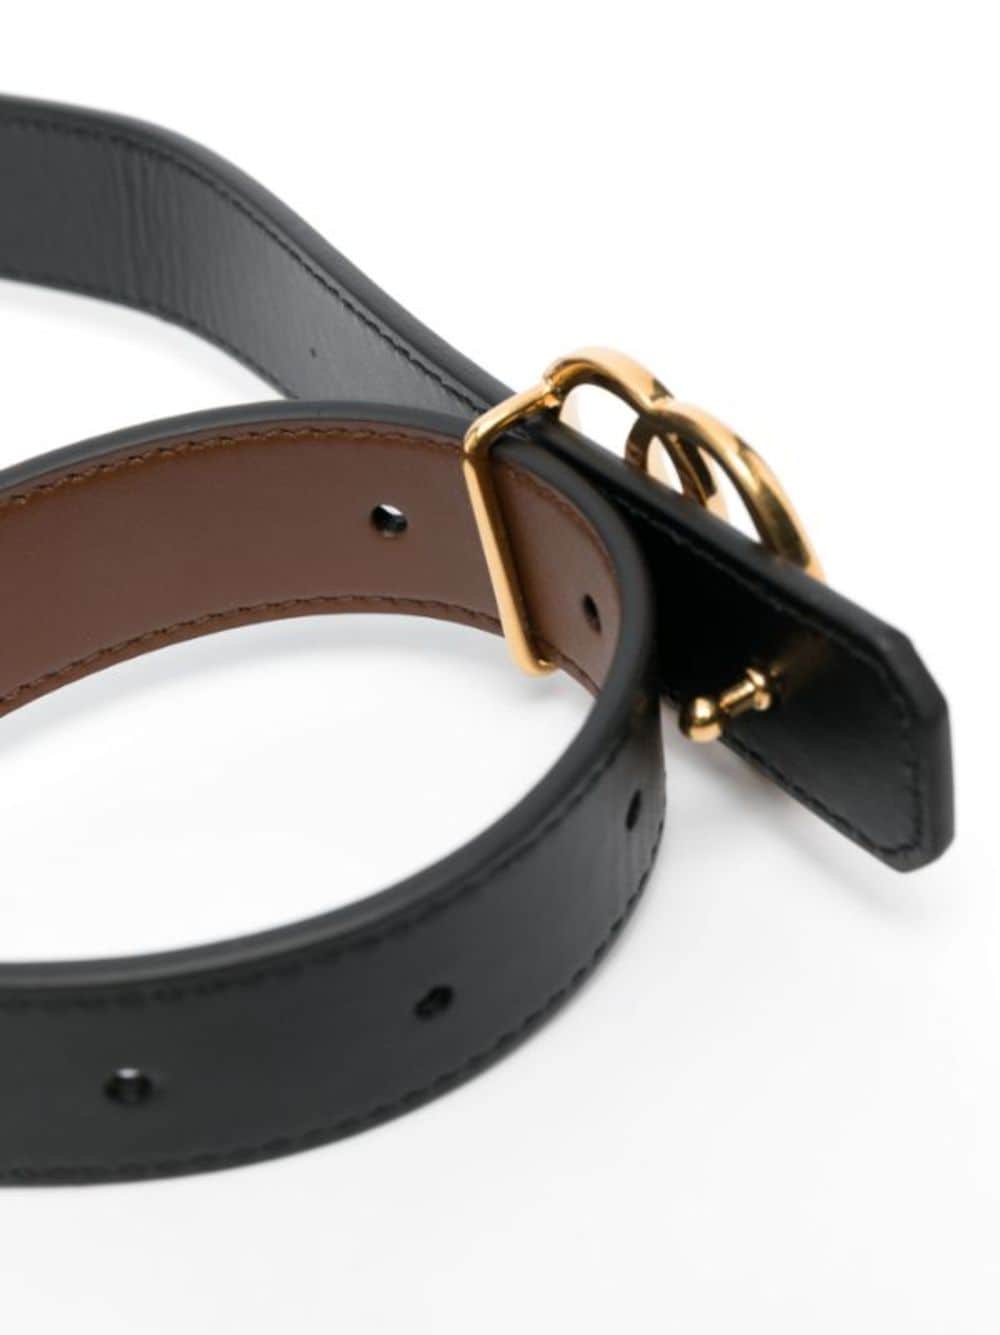 Bally logo-buckle Reversible Leather Belt - Farfetch